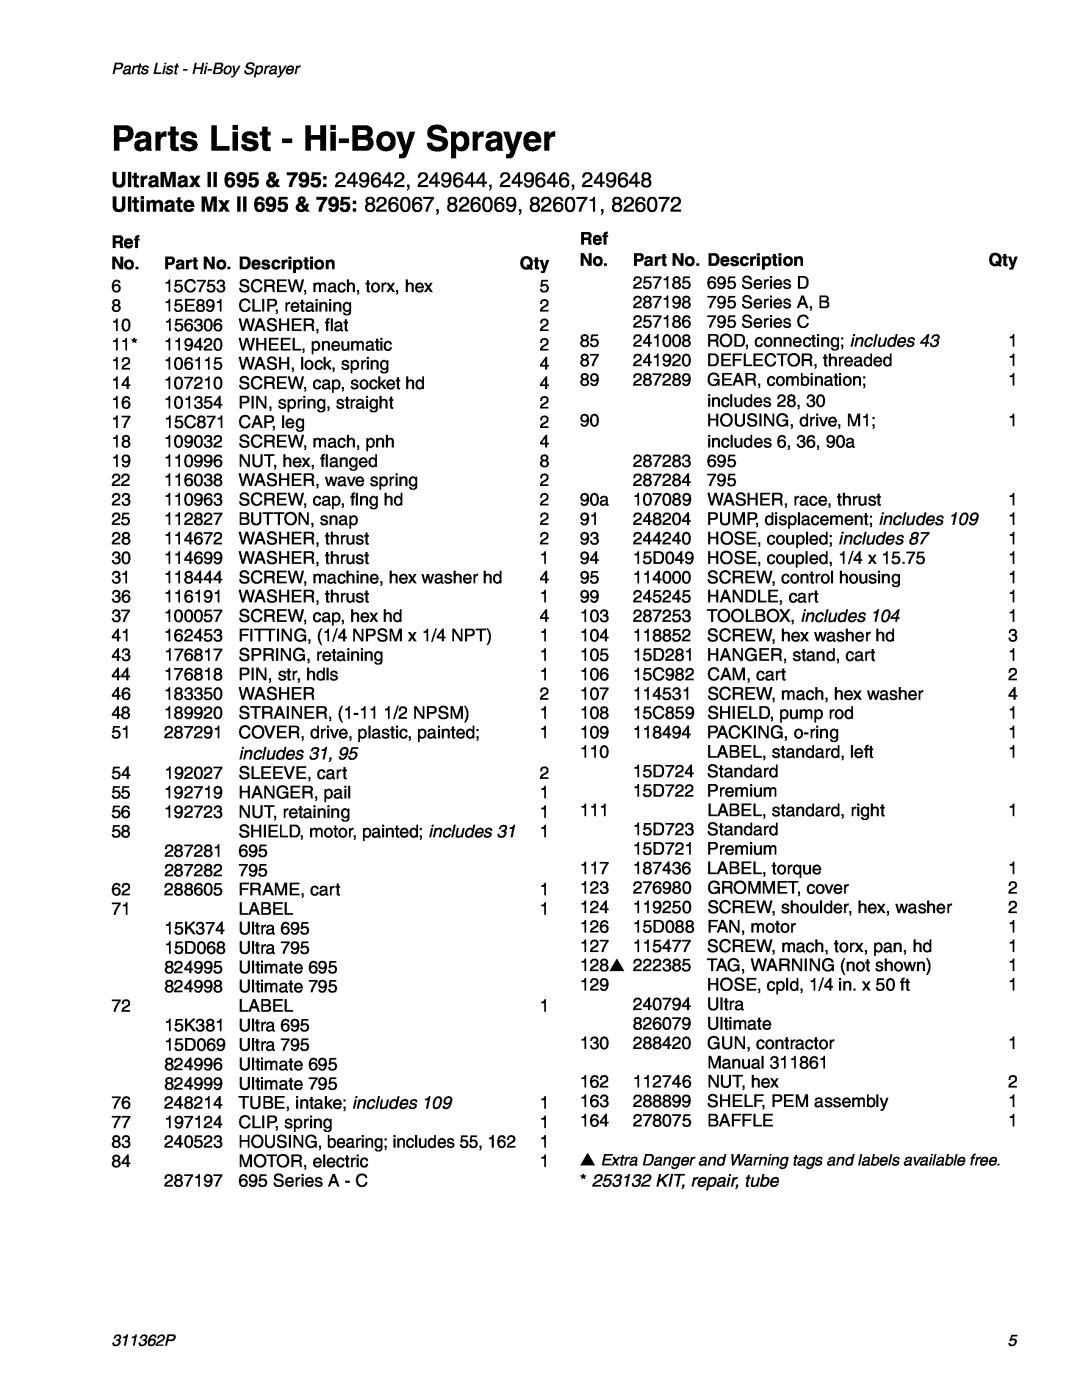 Graco Inc 1595, 1095 manual Parts List - Hi-Boy Sprayer, Part No. Description, UltraMax II 695 & 795 249642, 249644, 249646 